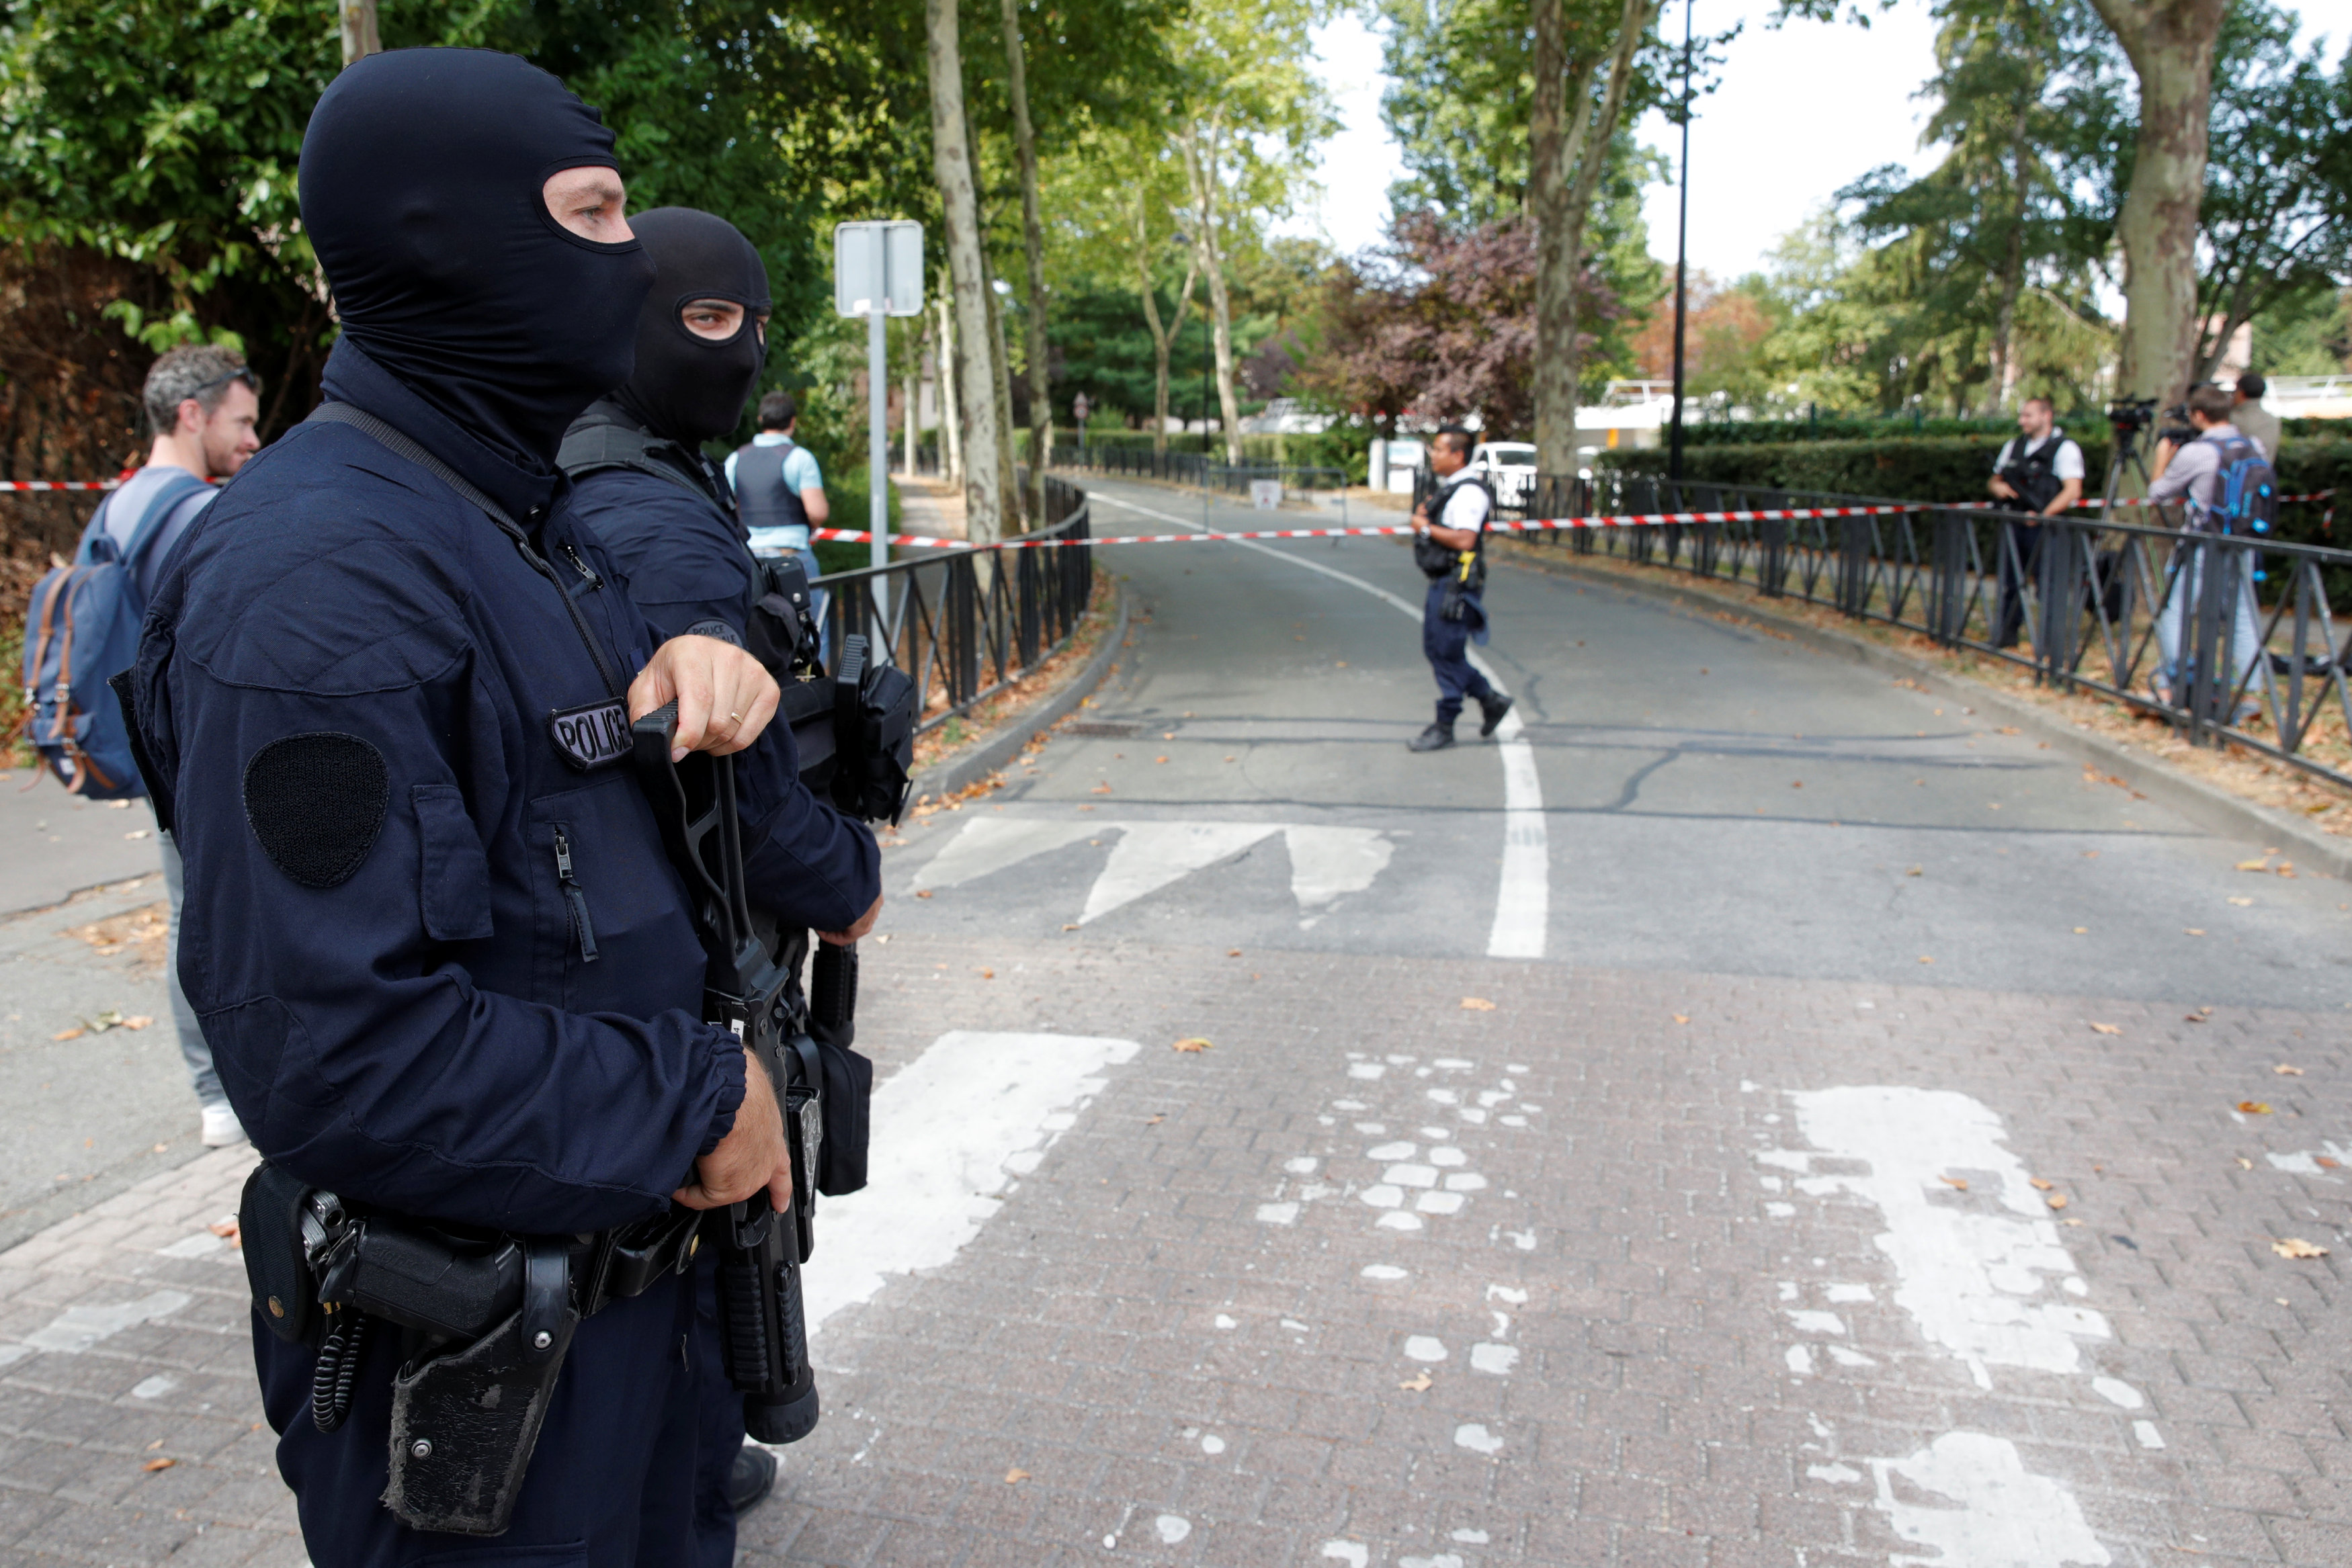 Asesinadas con cuchillo en Francia eran la madre y la hermana del atacante